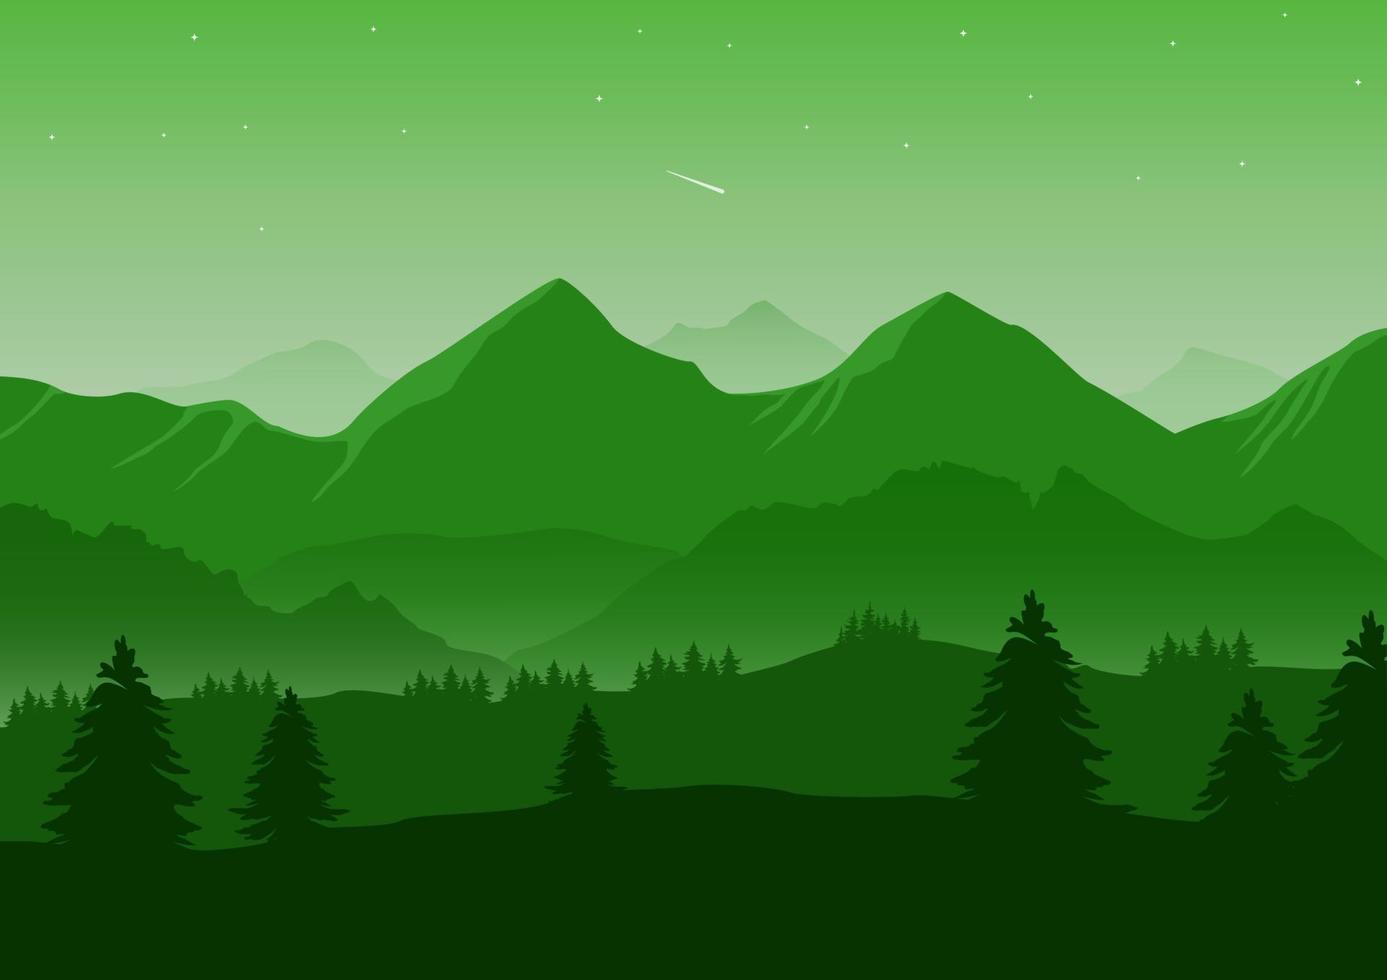 realistische berglandschaftsvektorillustration. Kiefern und die grünen Silhouetten der Berge für den Hintergrund. vektor